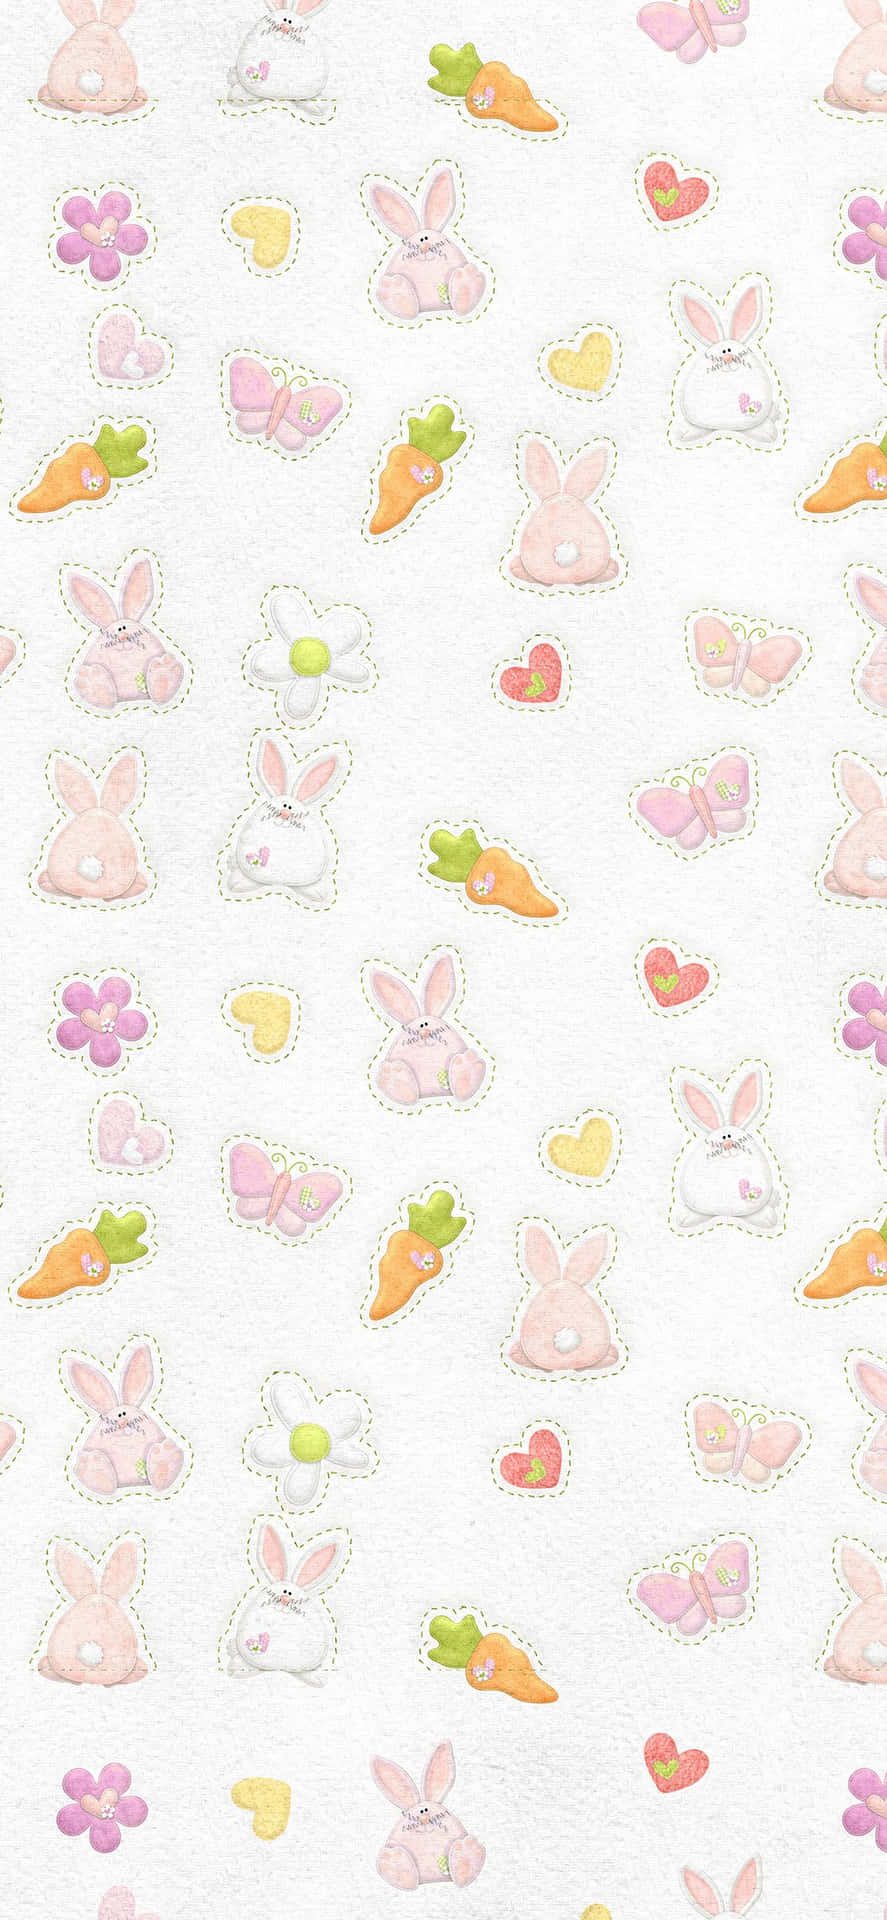 Einweißer Hintergrund Mit Einem Muster Aus Hasen Und Karotten. Wallpaper